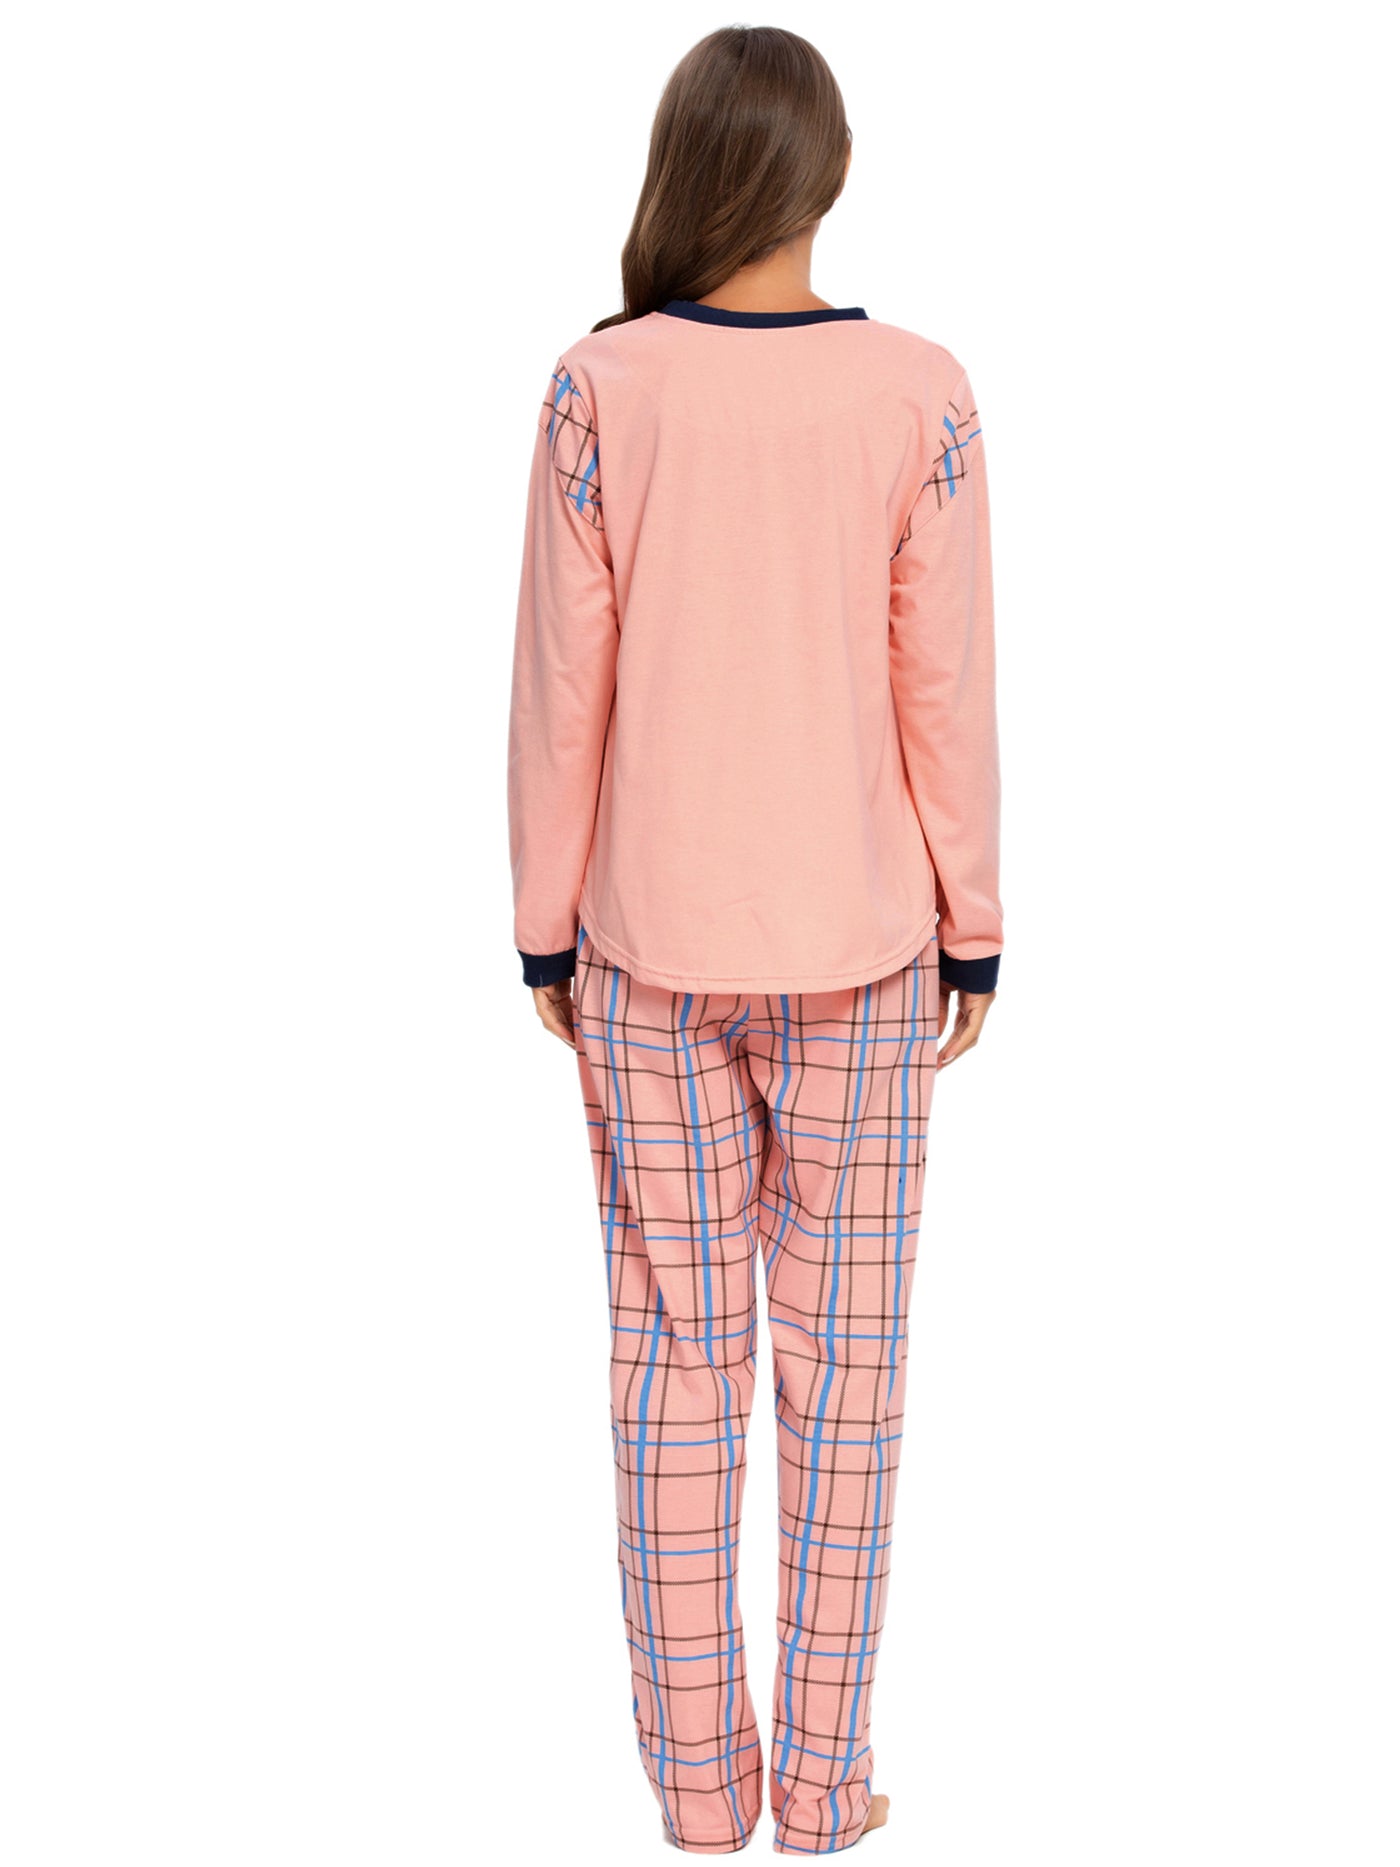 Bublédon Sleepwear Pjs Lounge Round Neck Pants Nightwear Pajama Set